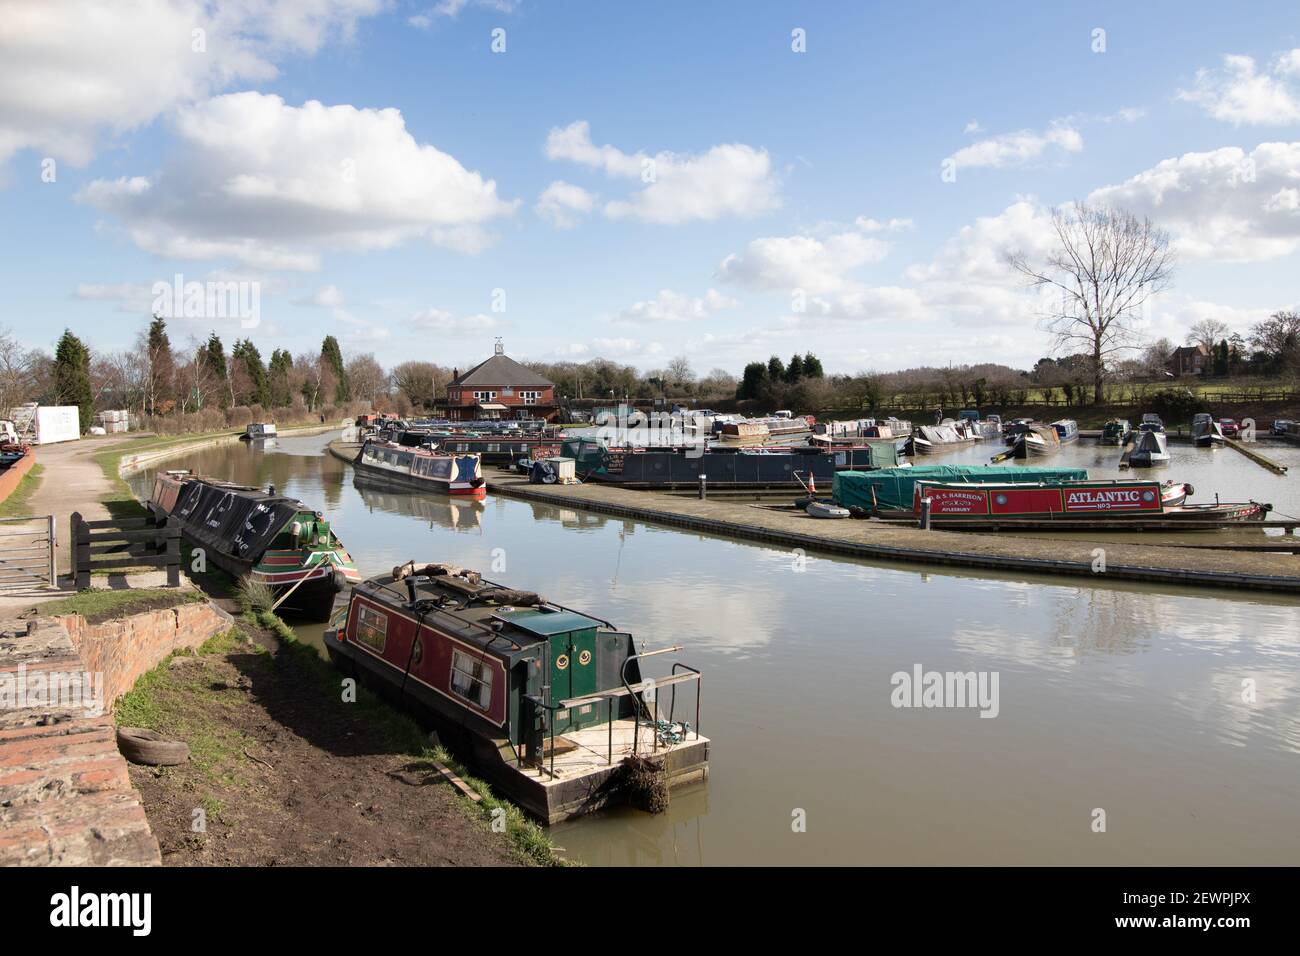 Alvecote Marina, Coventry canal near Tamworth, Staffordshire. Stock Photo